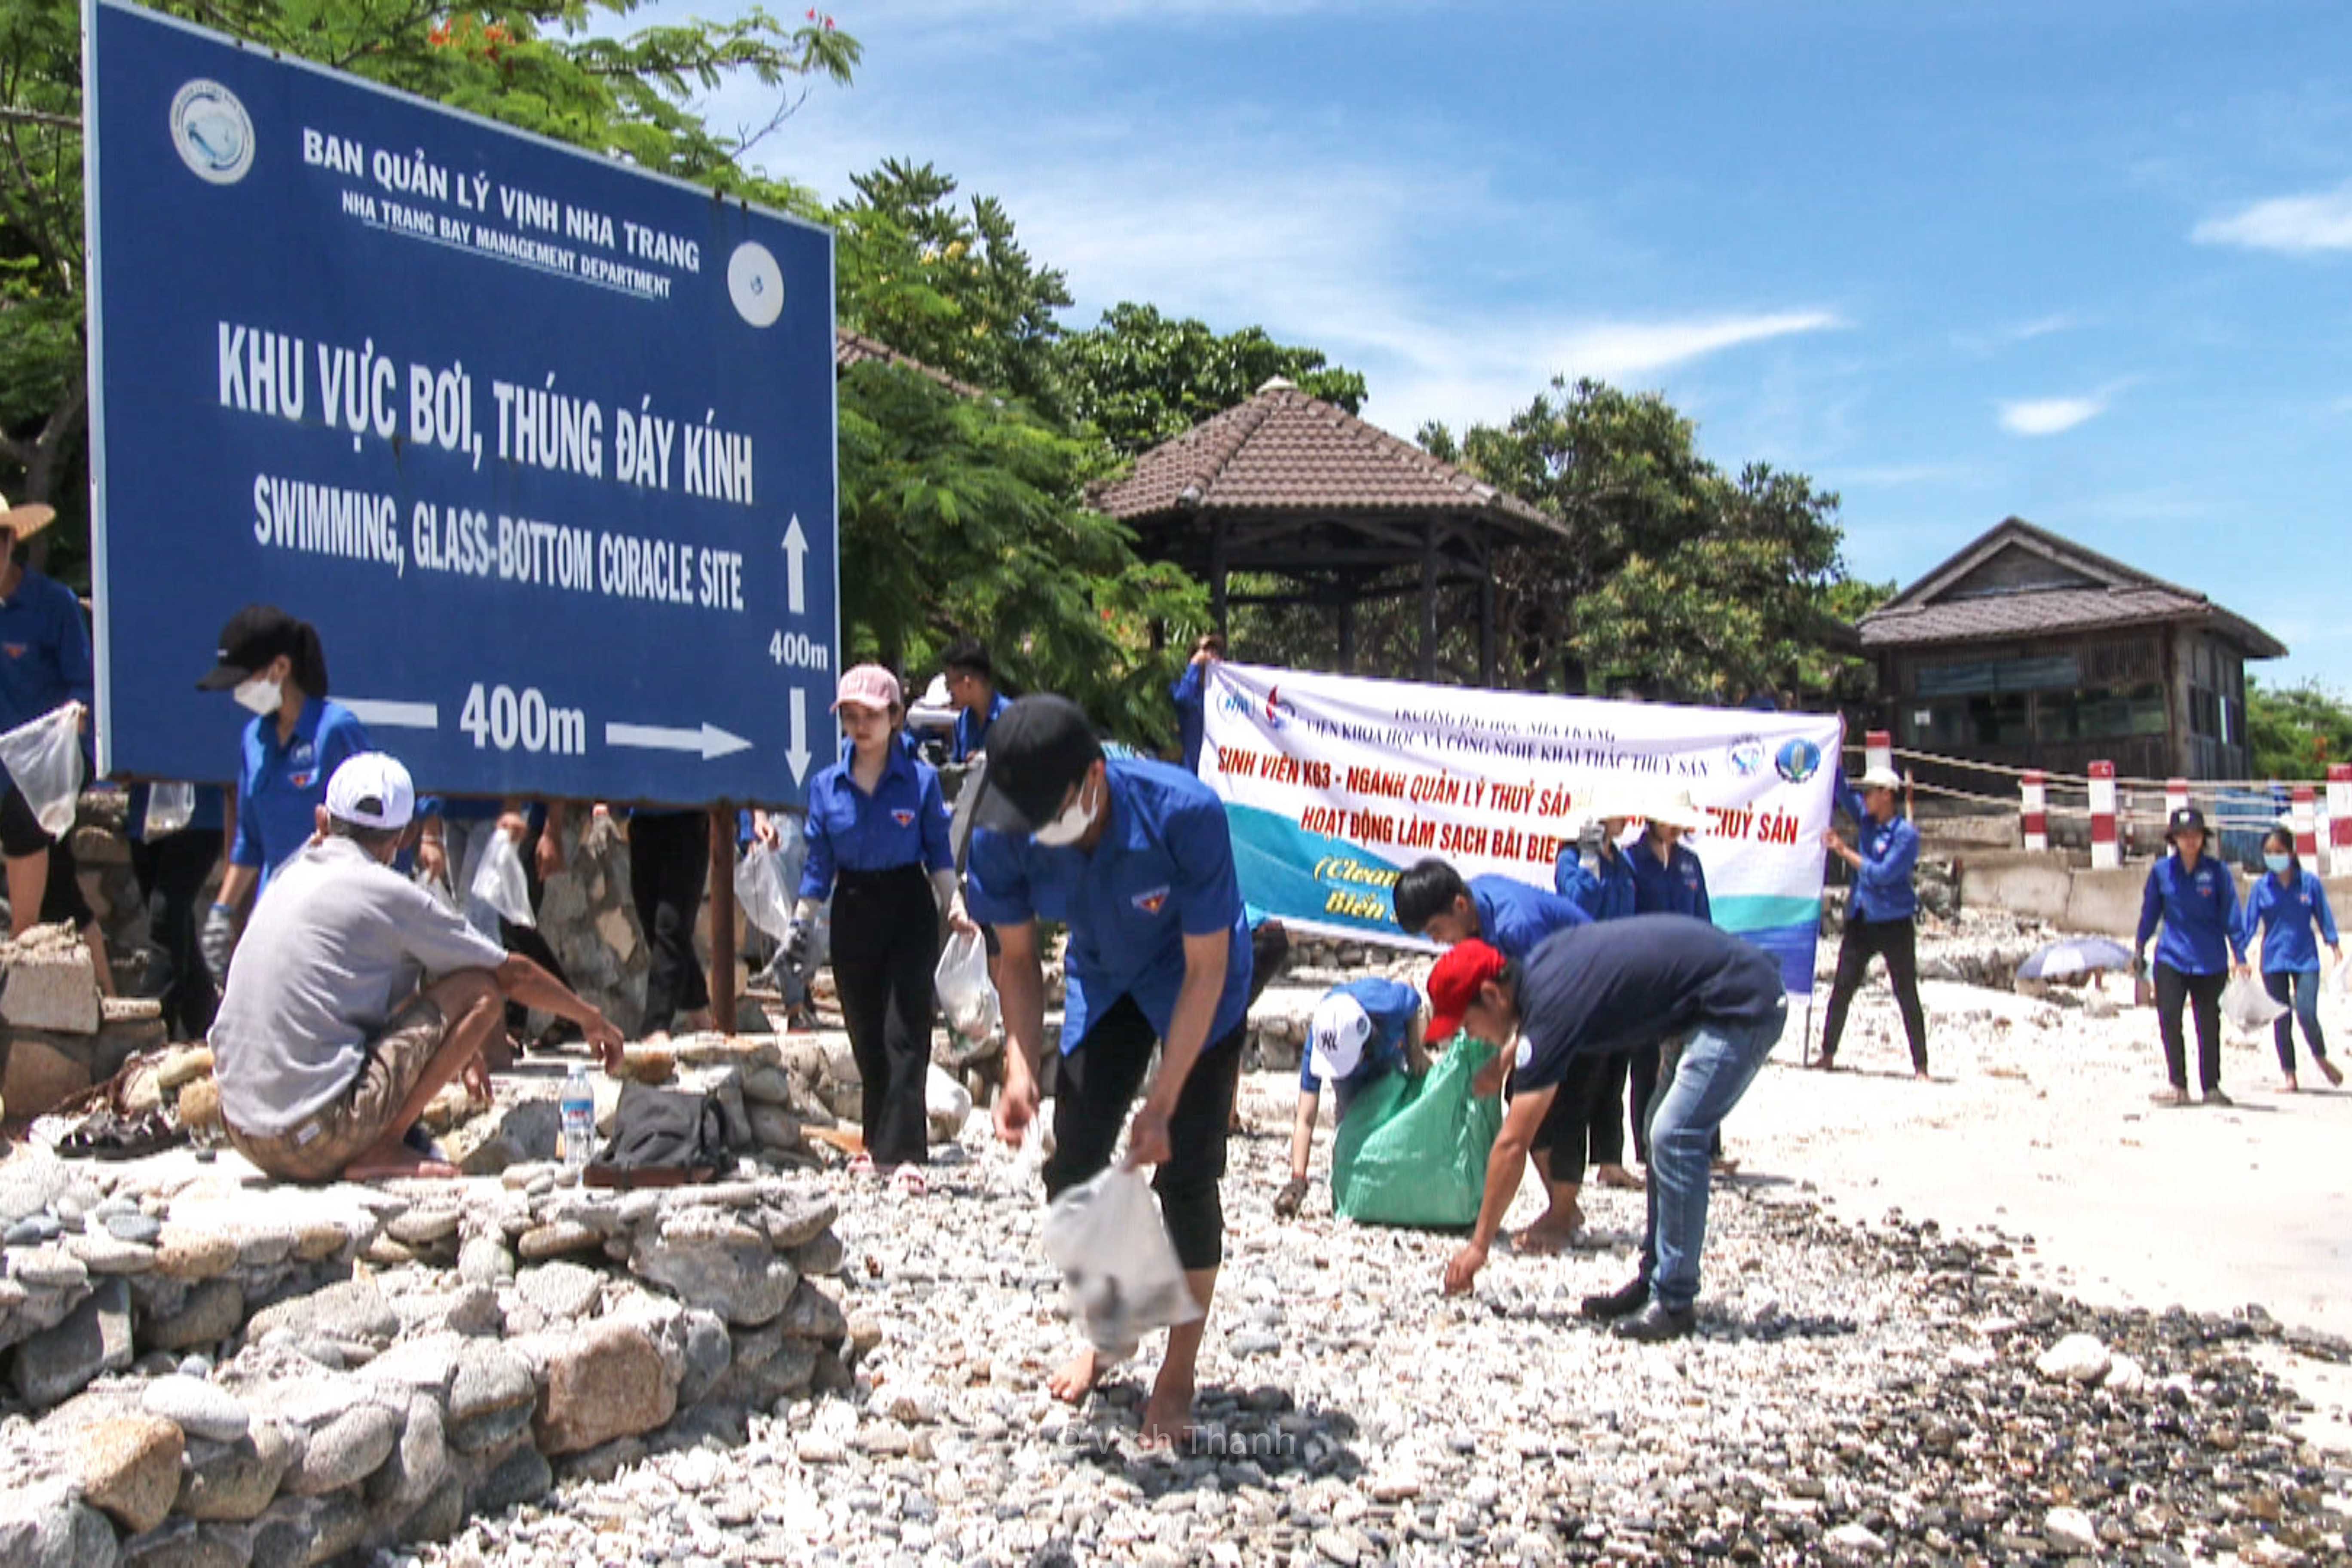 Thành viên đoàn tham gia thu gom rác trên đảo